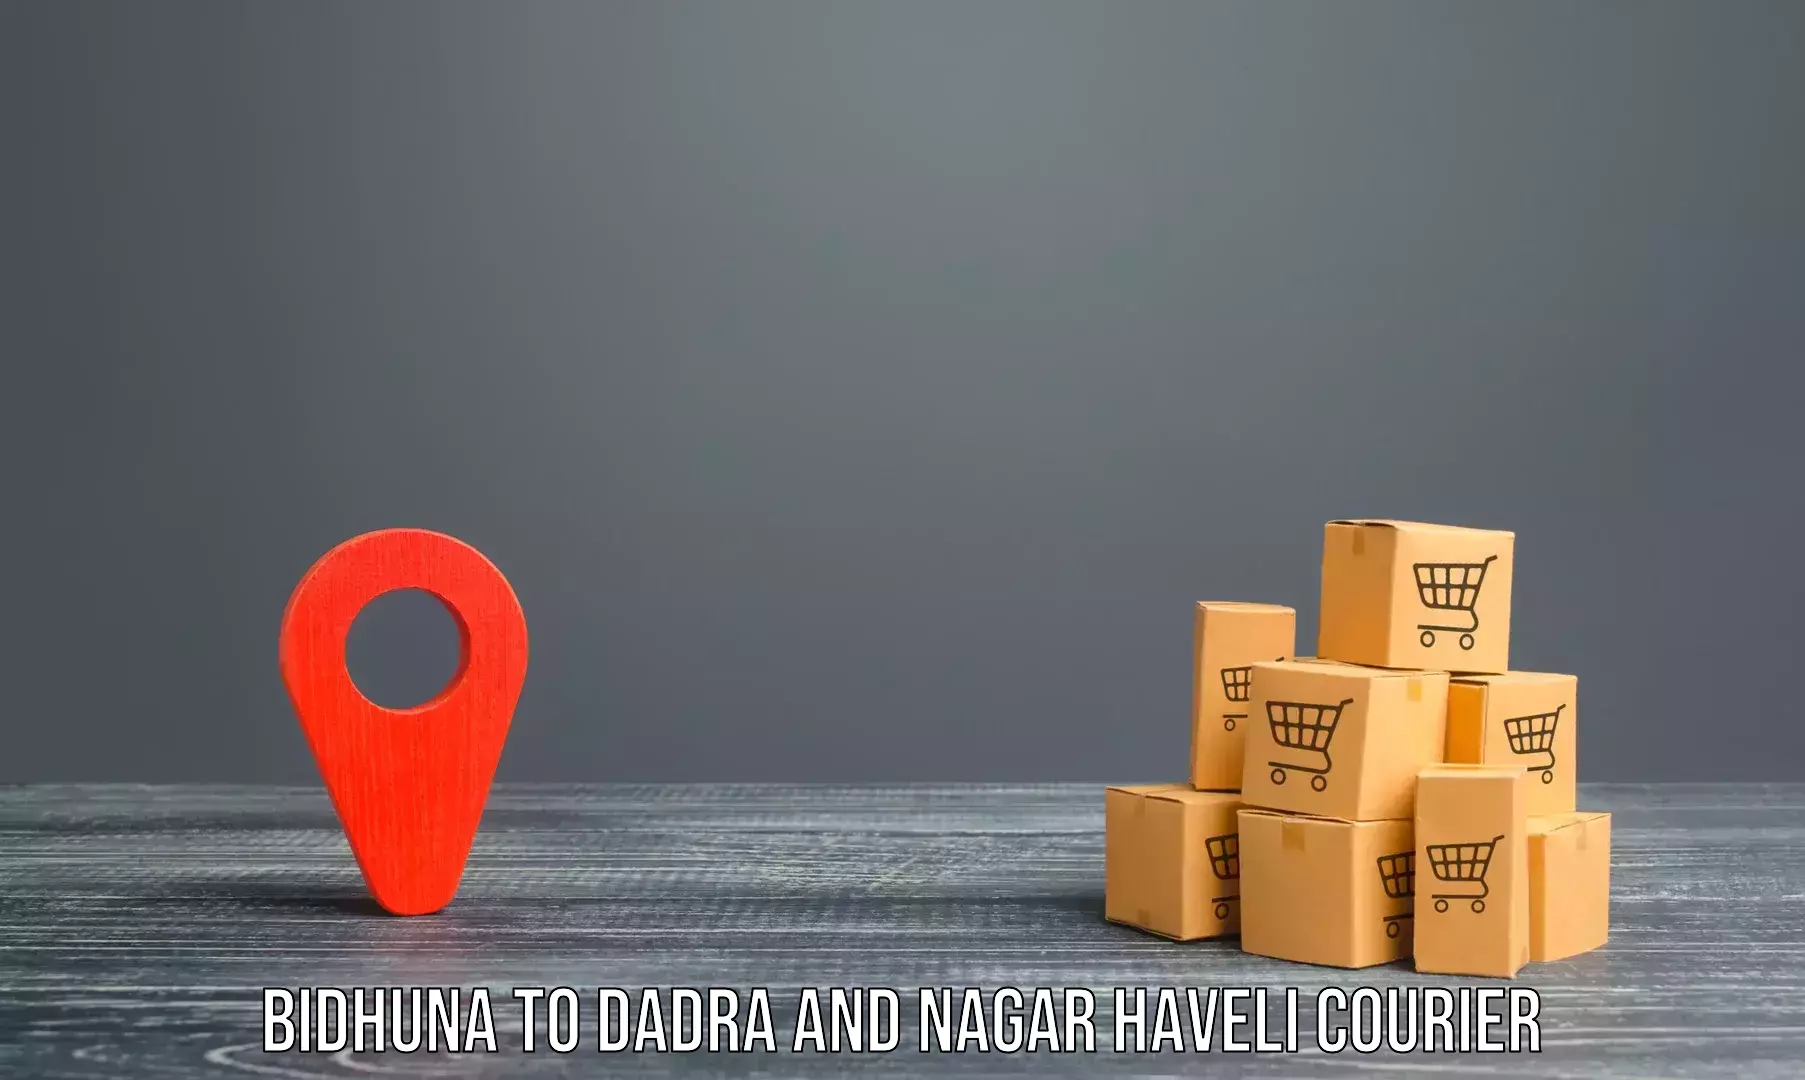 Home relocation experts Bidhuna to Dadra and Nagar Haveli